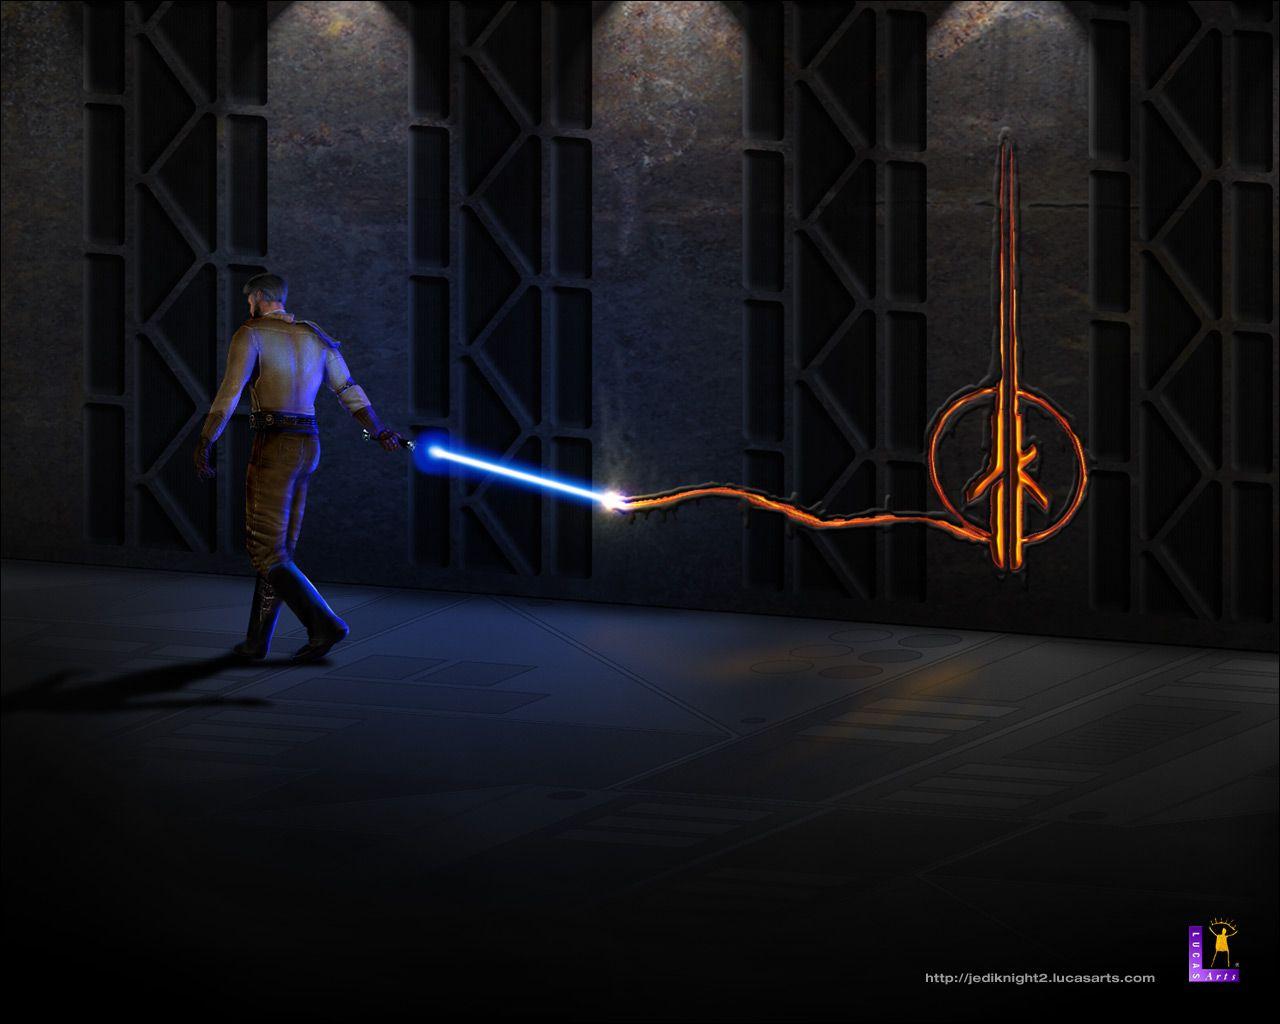 Star Wars: Jedi Knight II Outcast (2002) promotional art